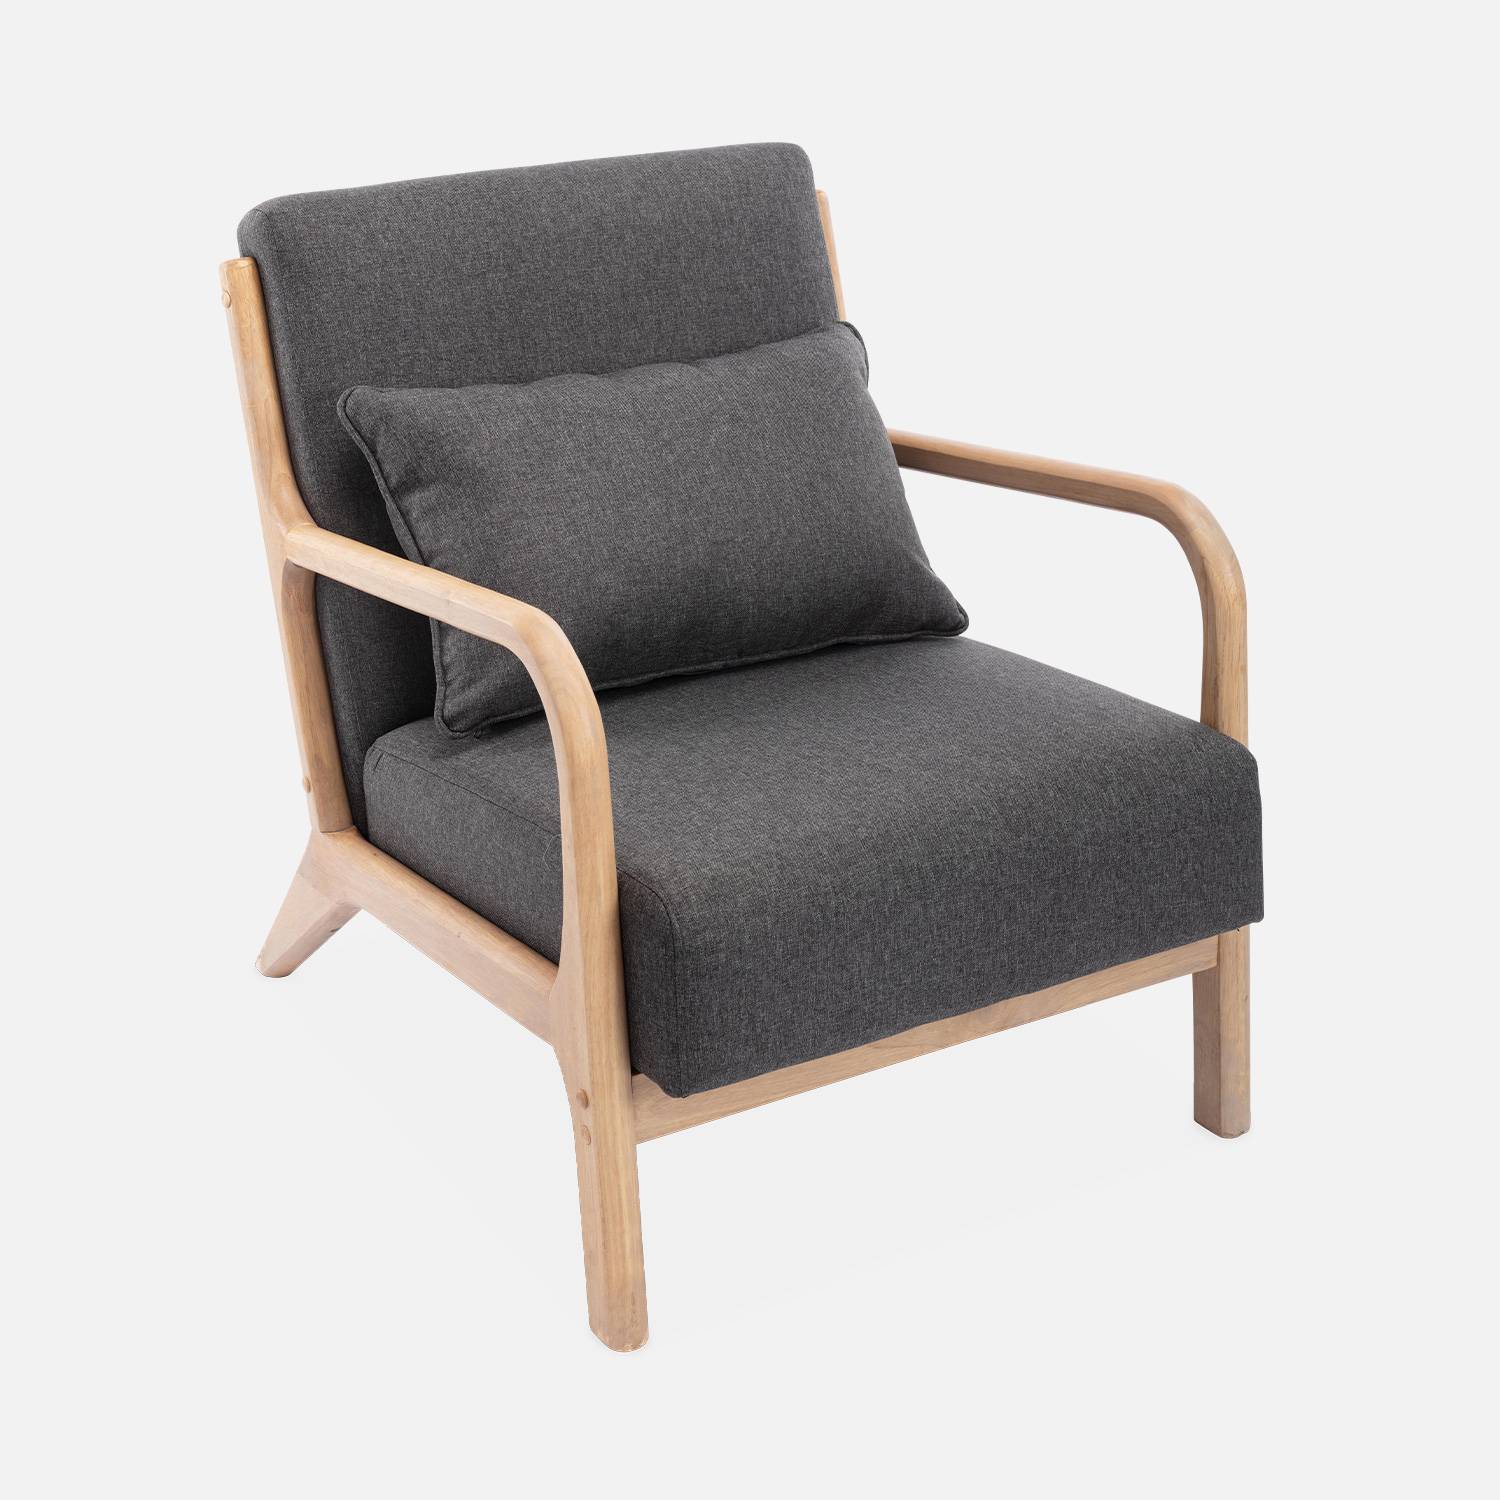 Poltrona de design em madeira e tecido, 1 assento direito fixo, pernas em bússola escandinavas, estrutura em madeira maciça, assento confortável, cinzento escuro Photo4